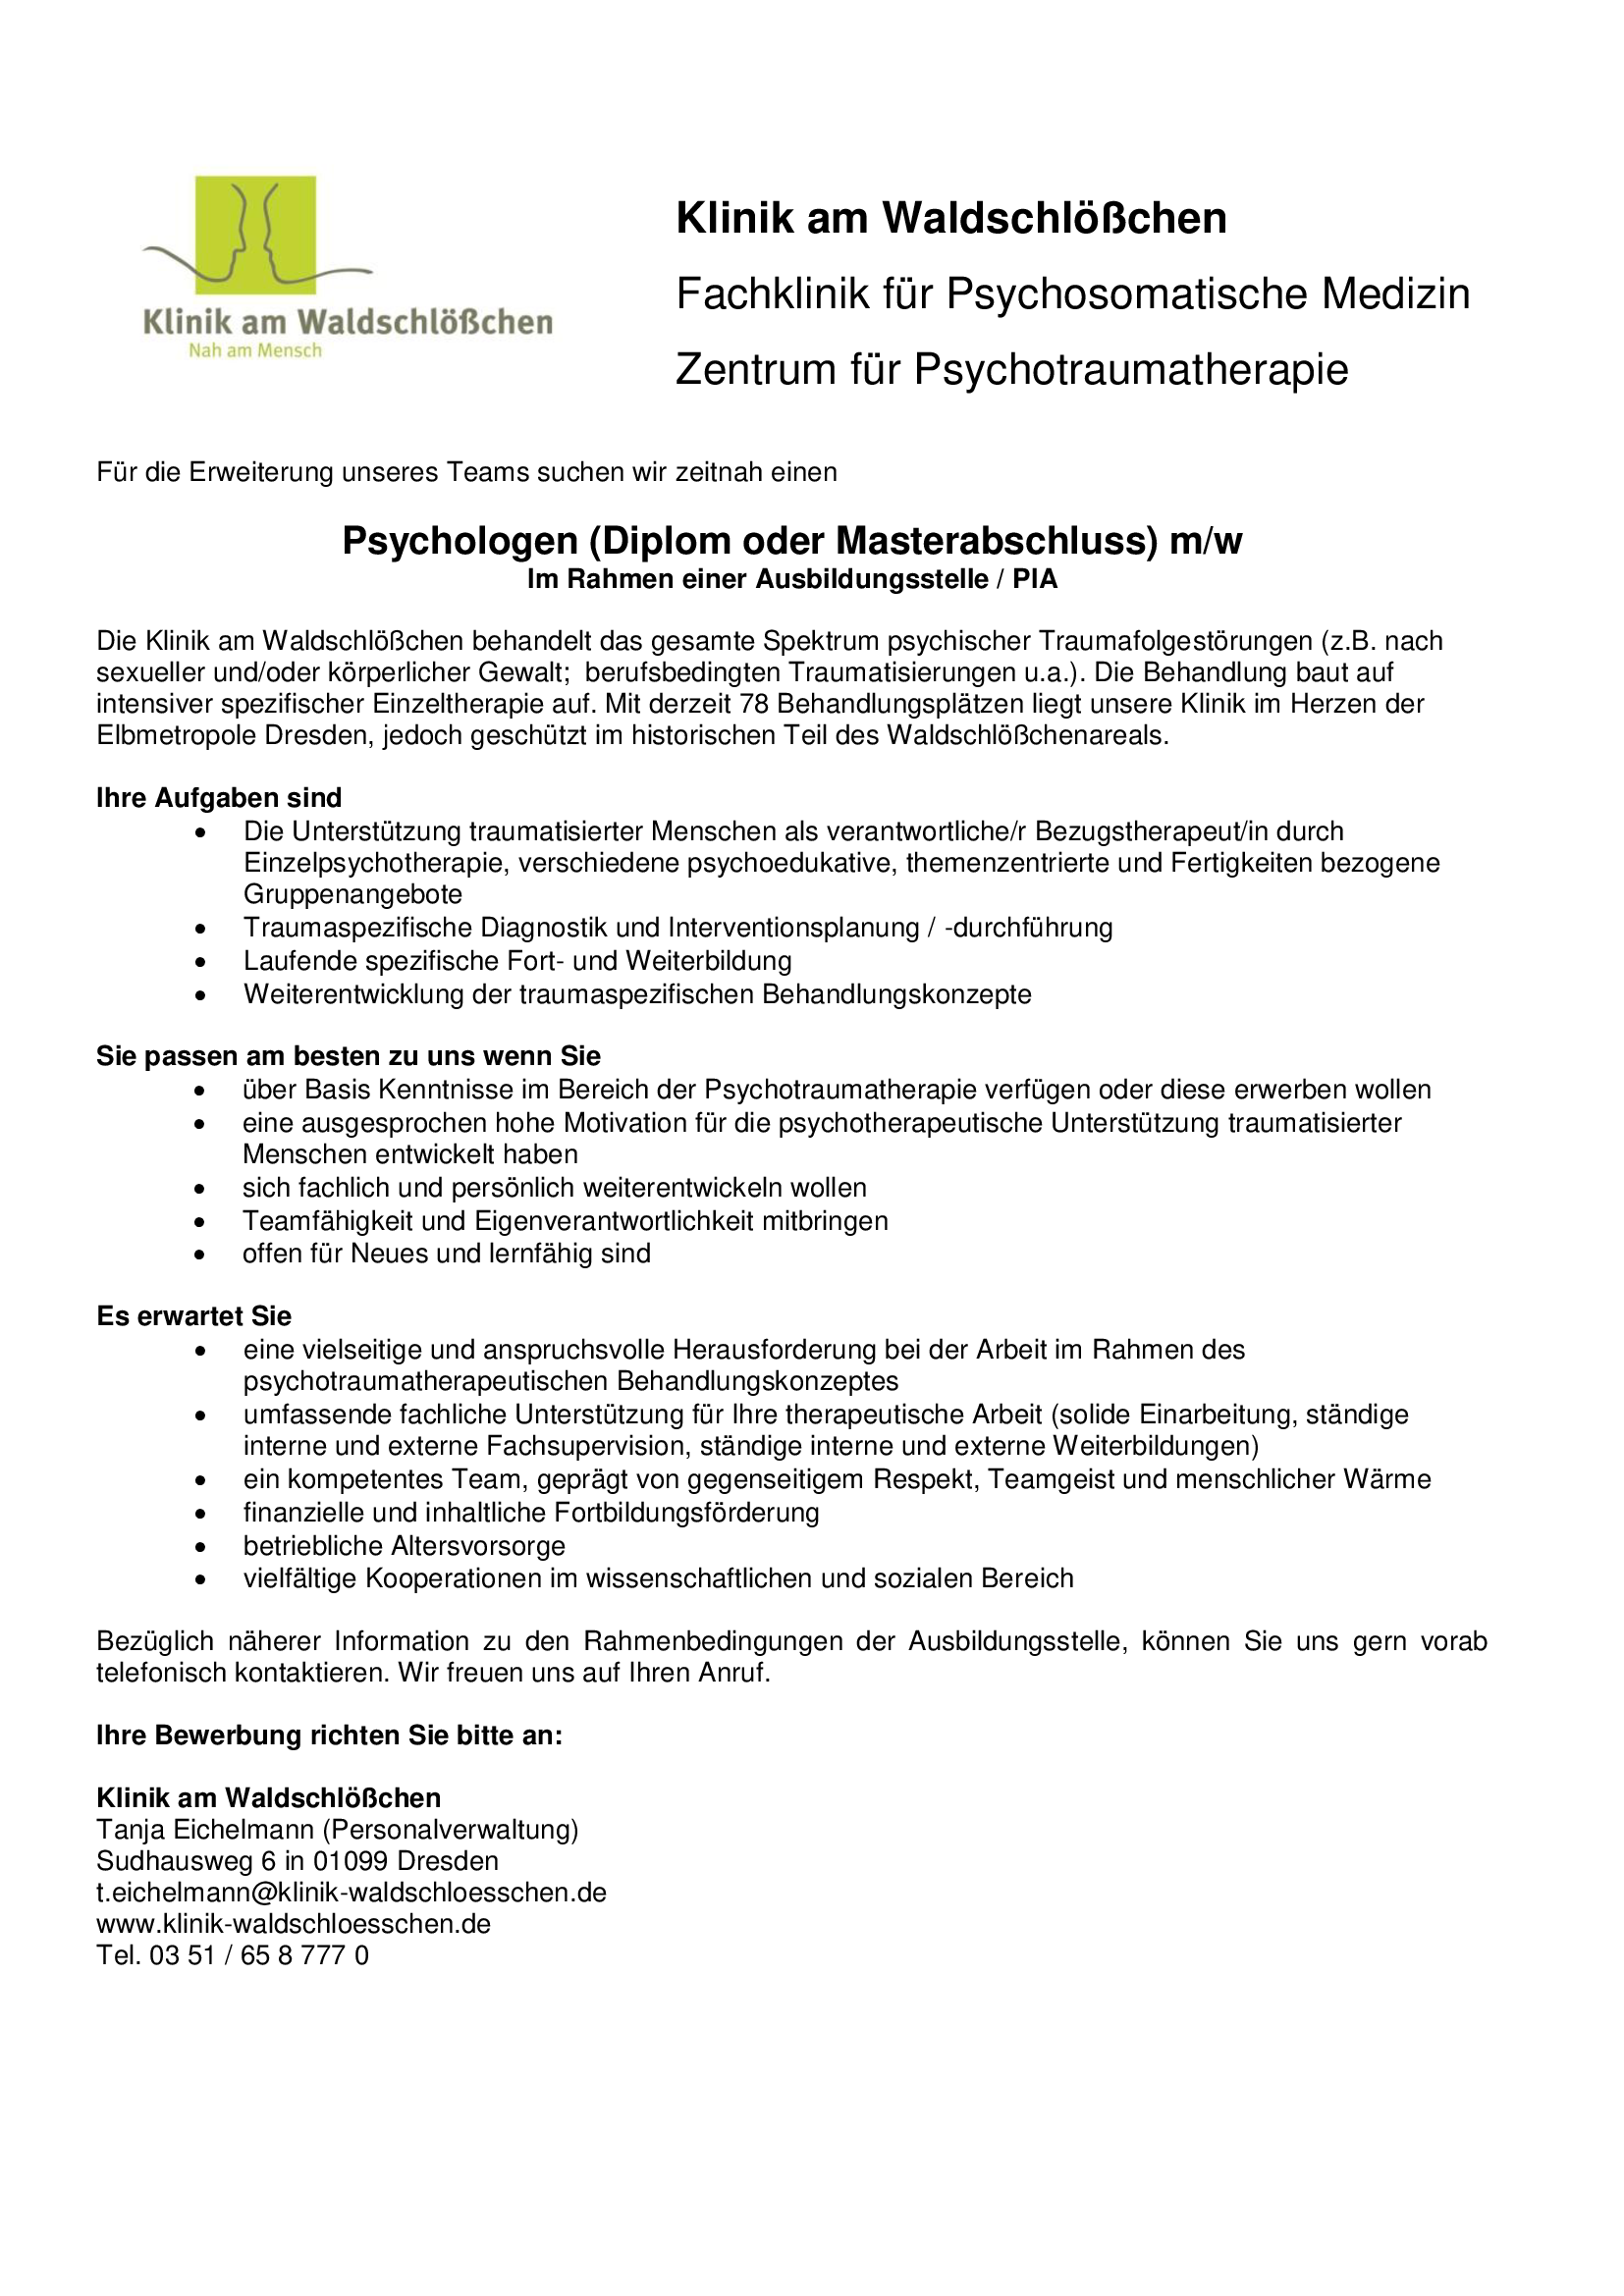 Klinik am Waldschlößchen, Dresden (01/2019): Psychologen m/w (Diplom oder Masterabschluss) im Rahmen einer Ausbildungsstelle / PIA